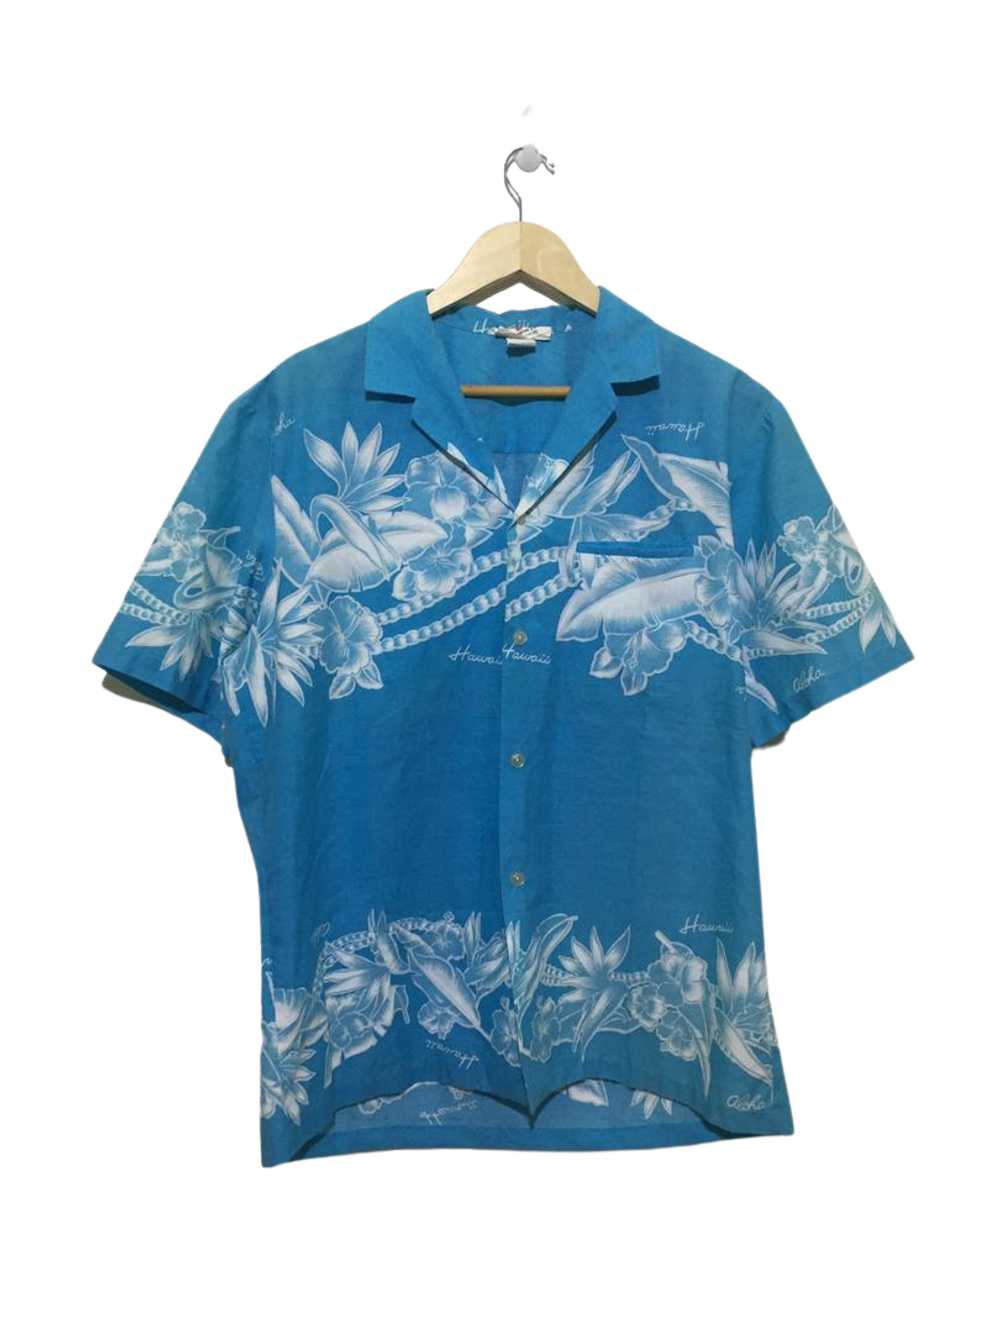 Aloha Wear - Vintage Aloha Hawaiian Fashion Shirt… - image 2